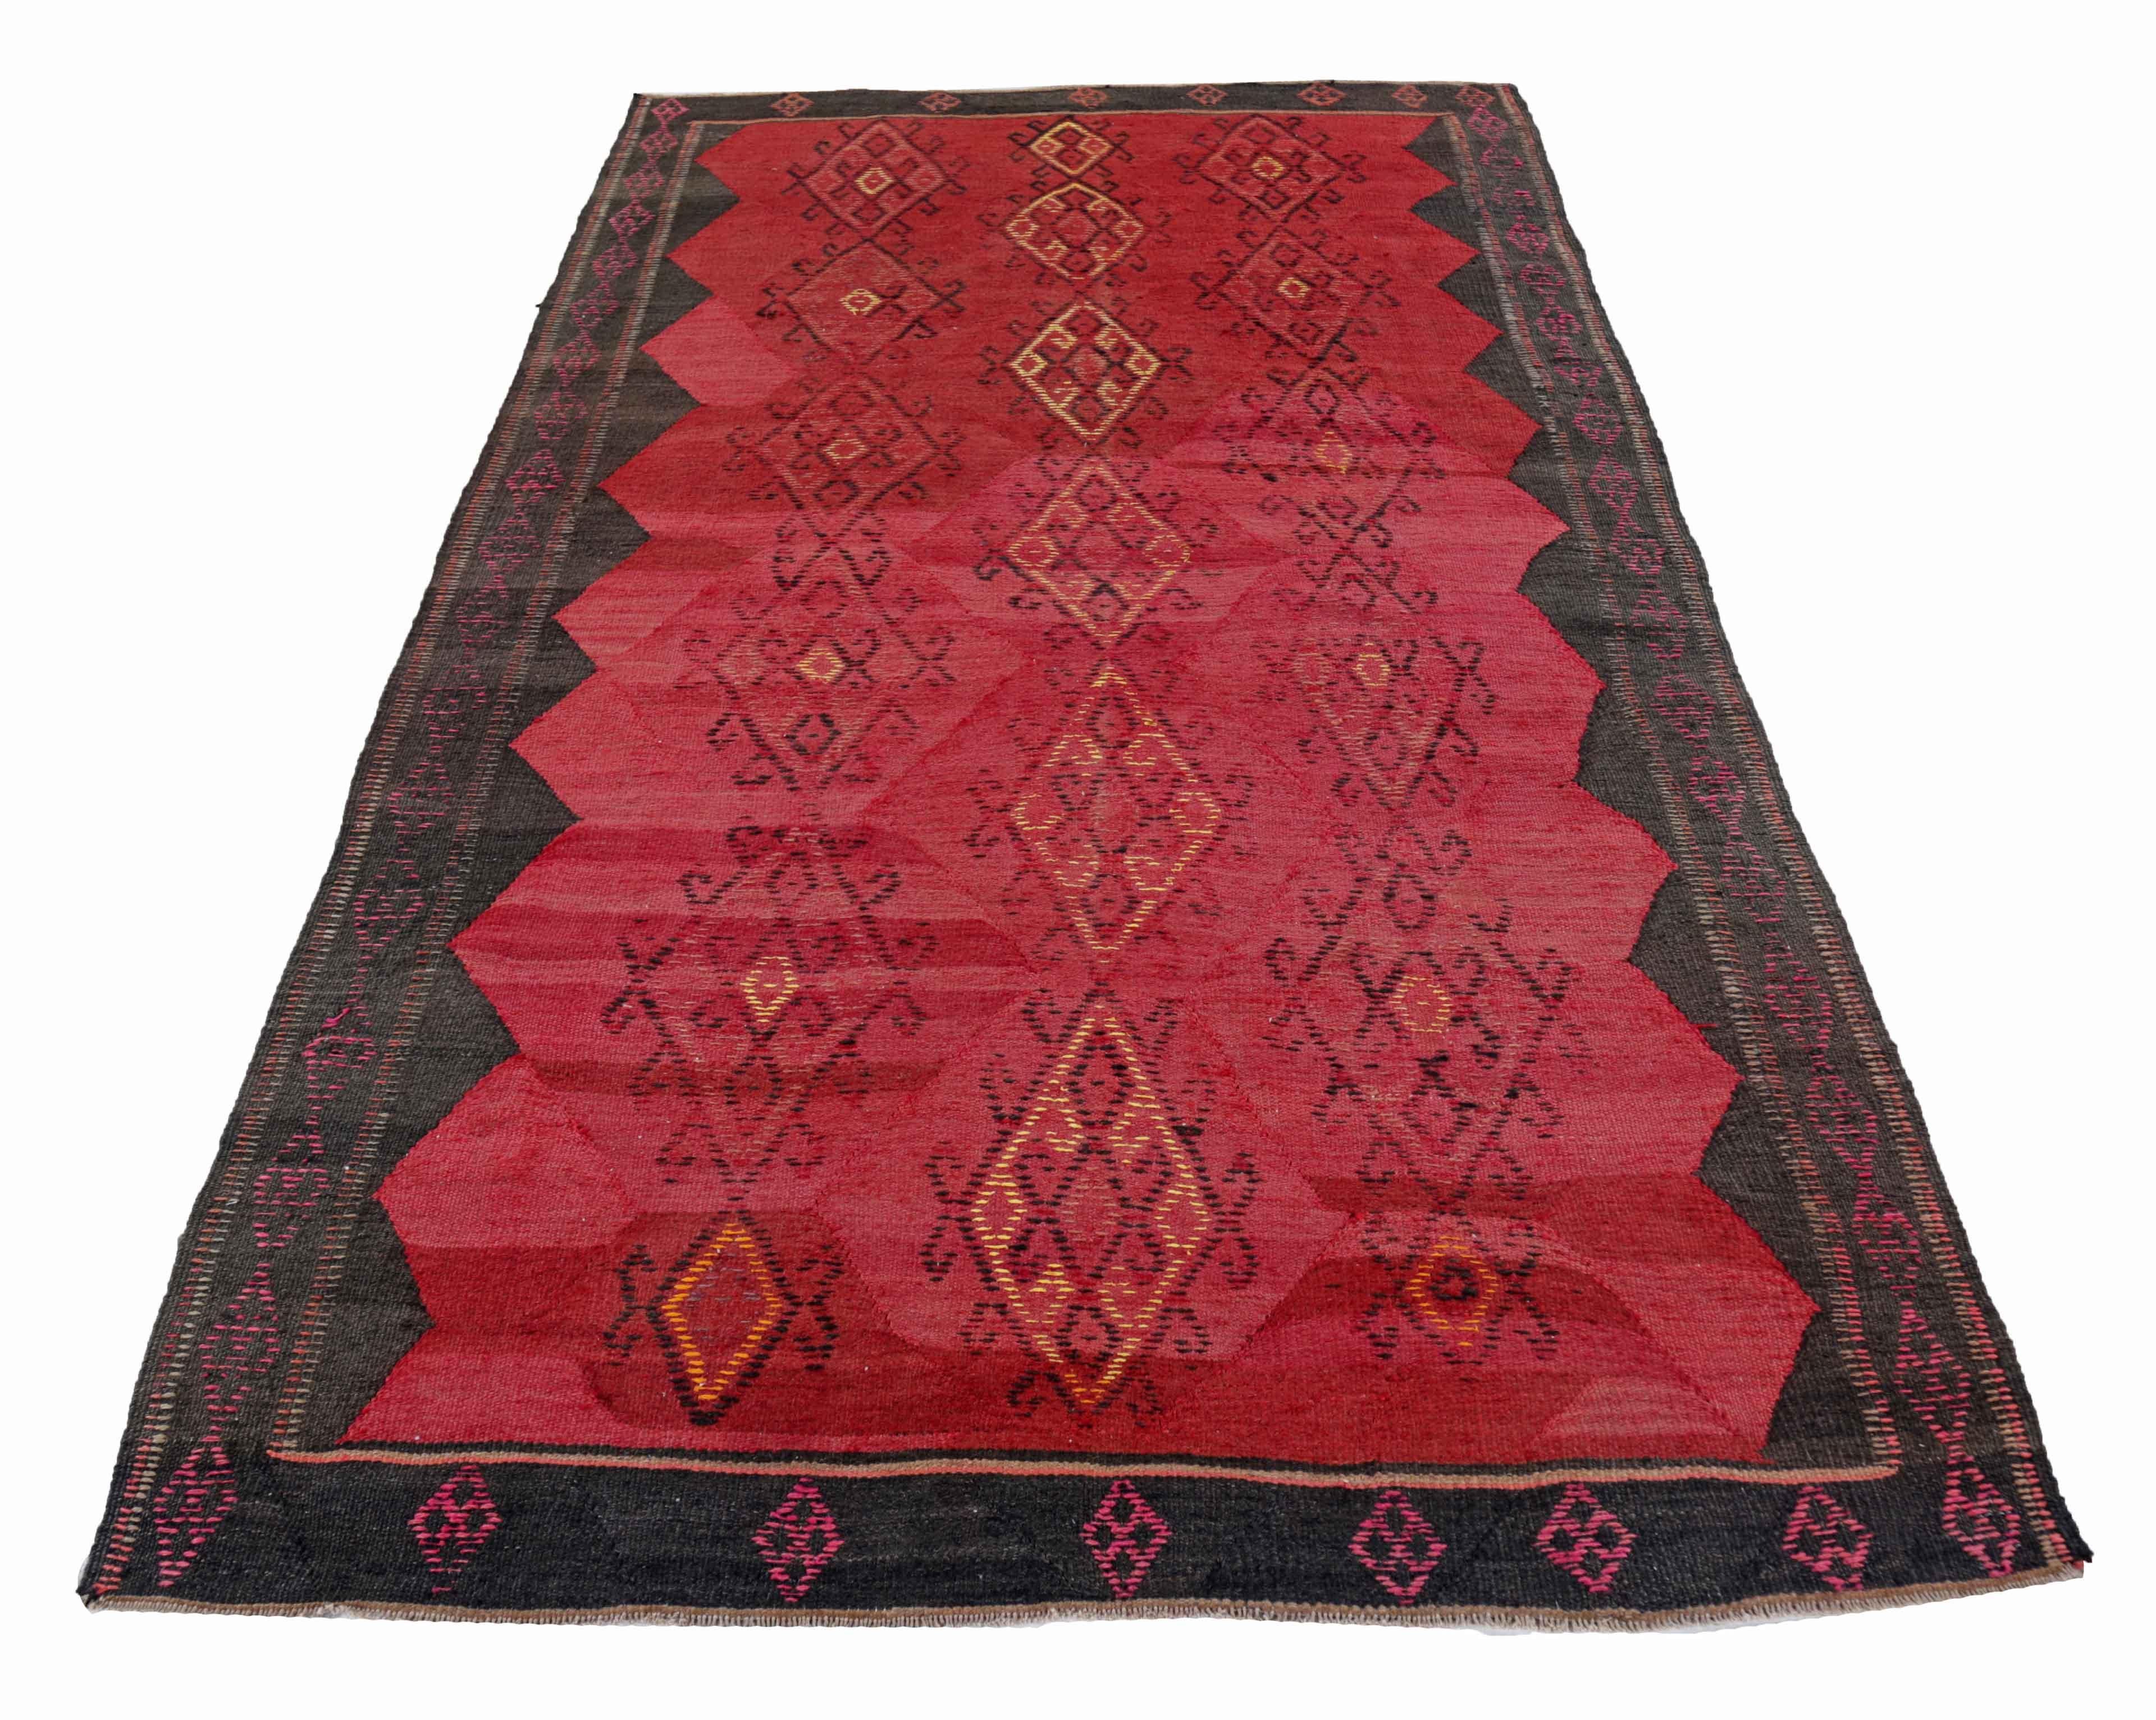 Ancien tapis persan tissé à la main à partir de la meilleure laine de mouton. Il est coloré avec des colorants végétaux entièrement naturels, sans danger pour les humains et les animaux de compagnie. Il s'agit d'un motif Kilim traditionnel tissé à